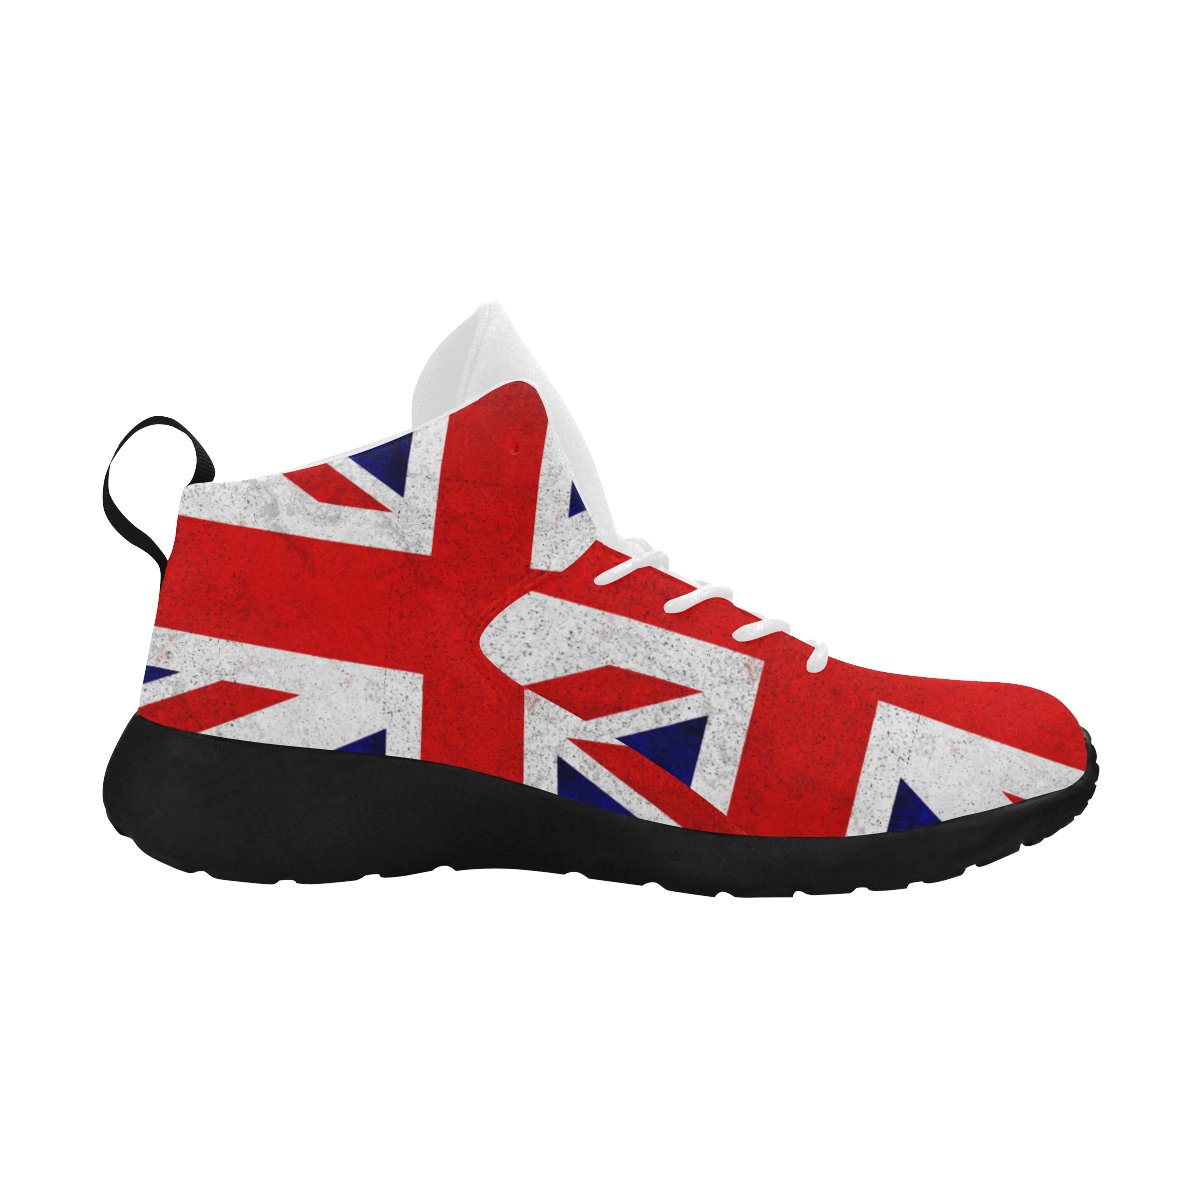 United Kingdom Union Jack Flag - Grunge 2 Women's Chukka Training Shoes (Model 57502)